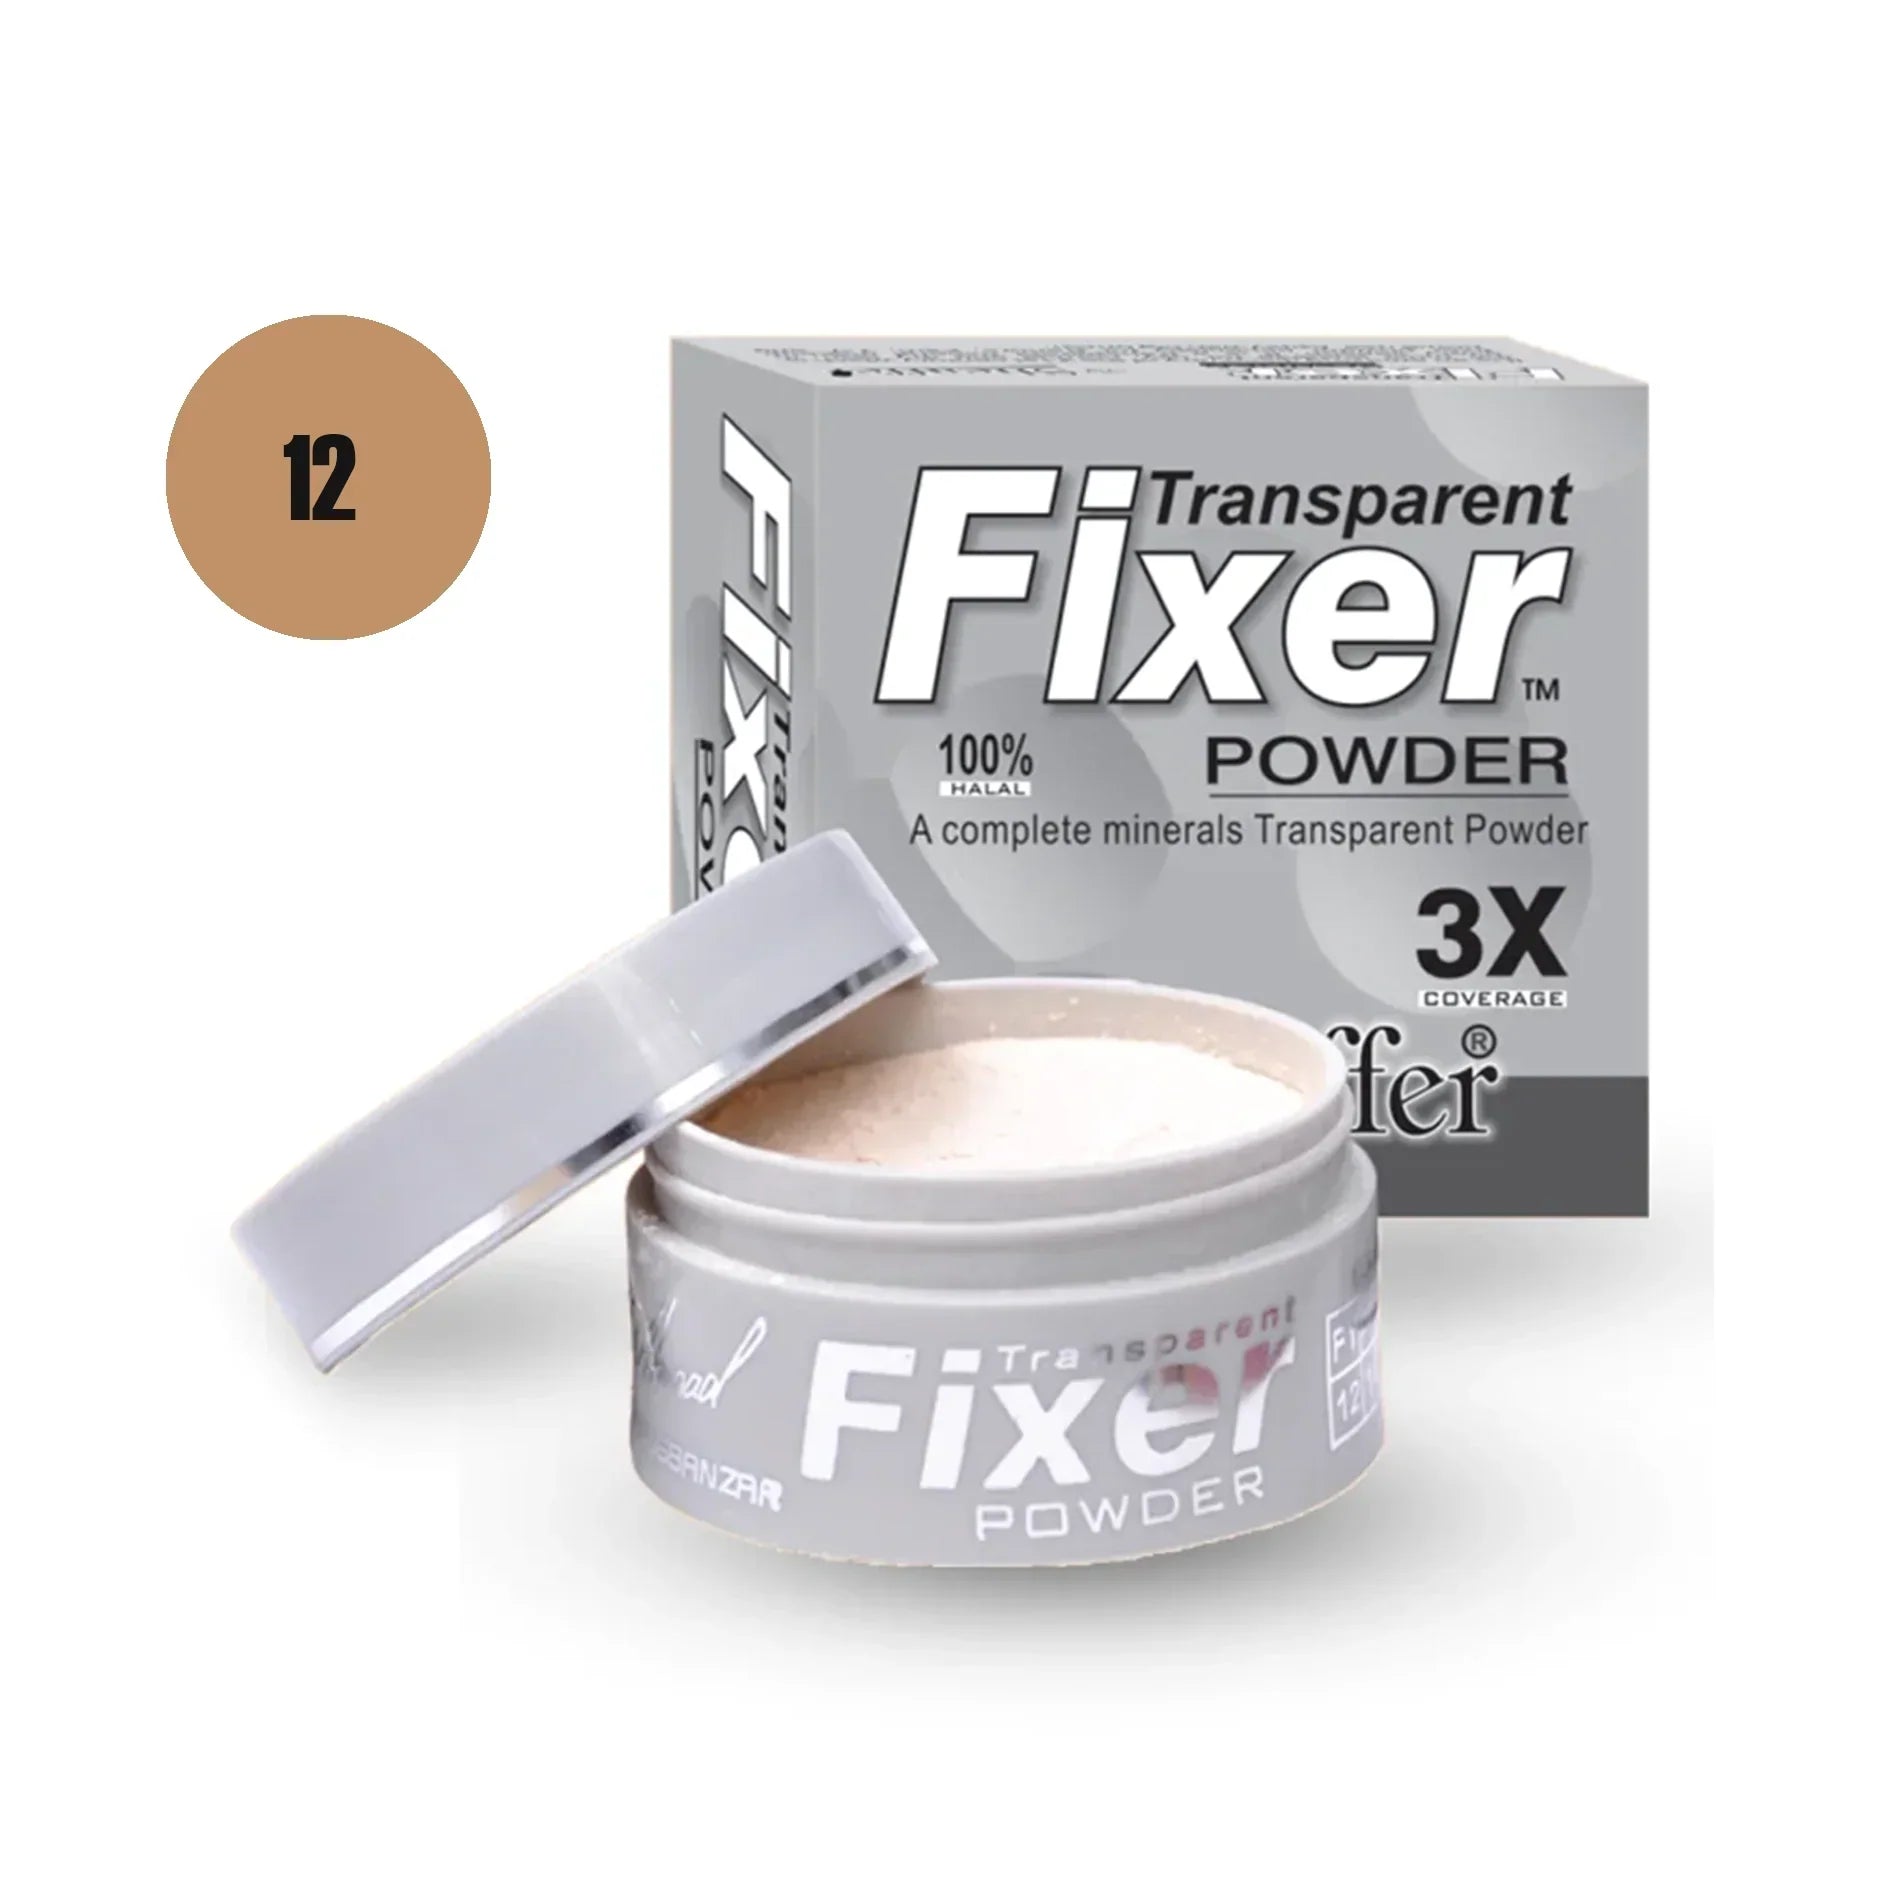 Sheaffer Transparent Fixer Powder Shade No 06 - Retailershop - Online Shopping Center